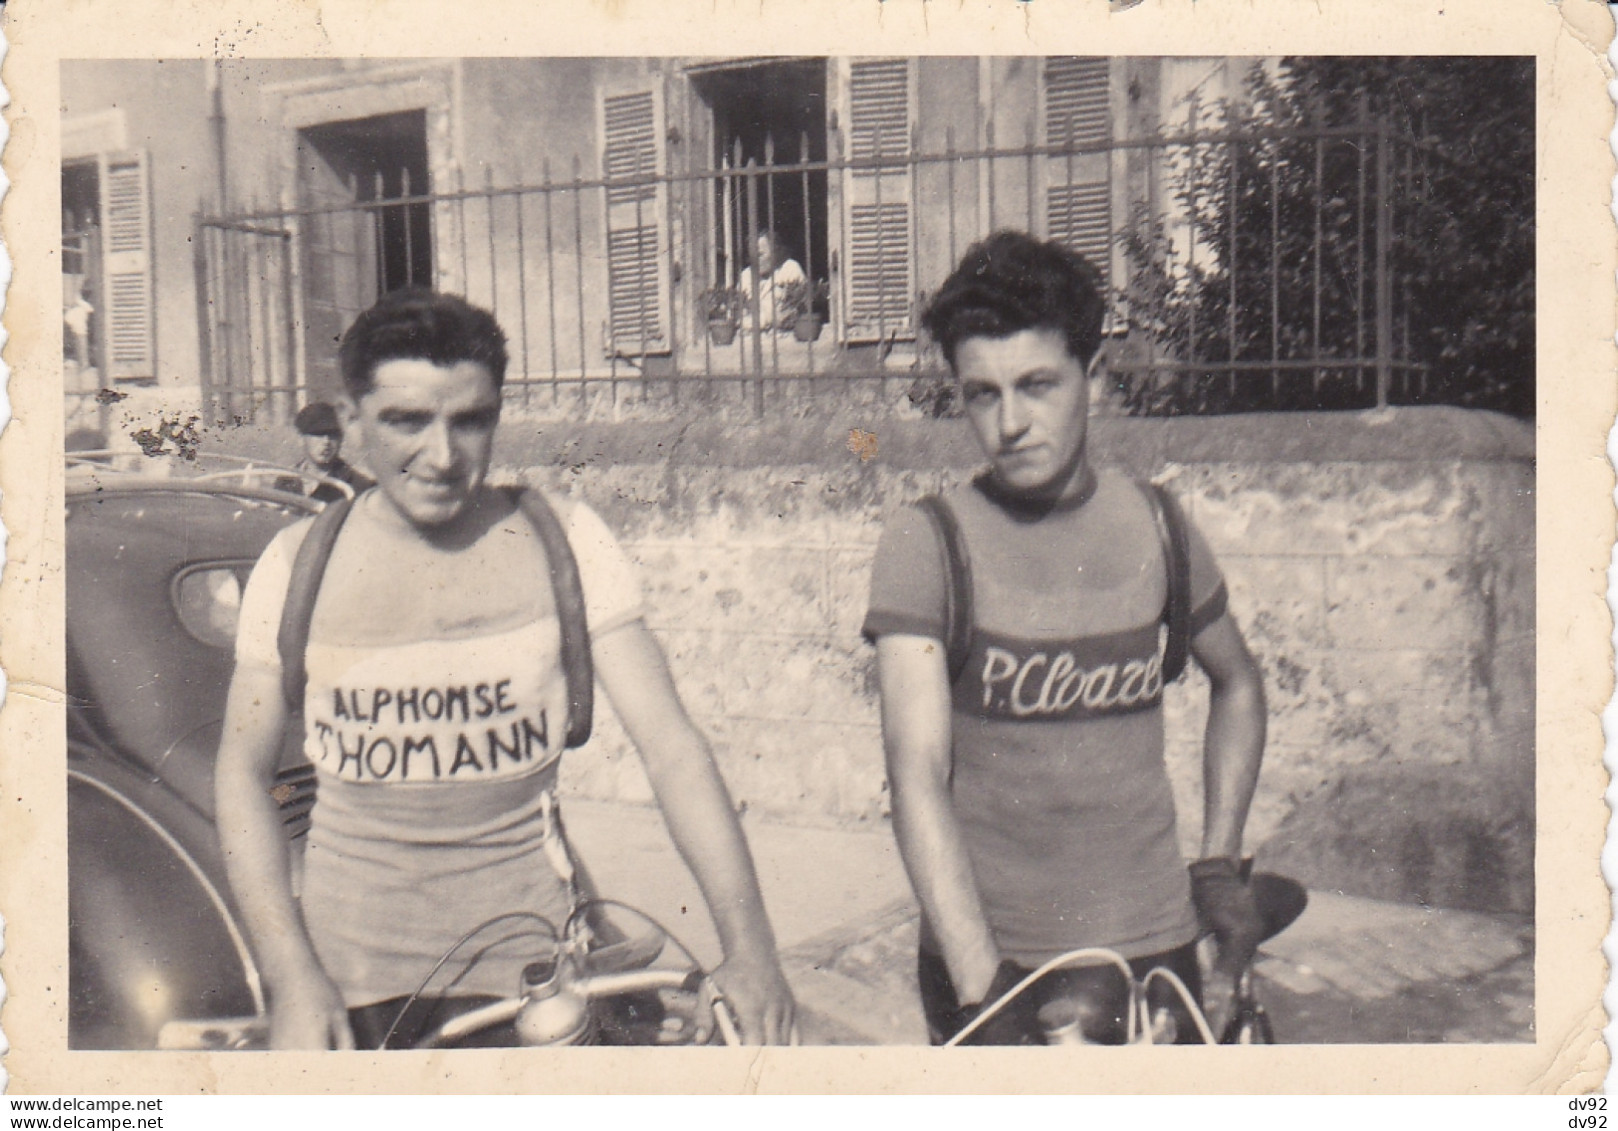 FINISTERE LEMBEZELLEC CYCLISTES 1951 - Radsport